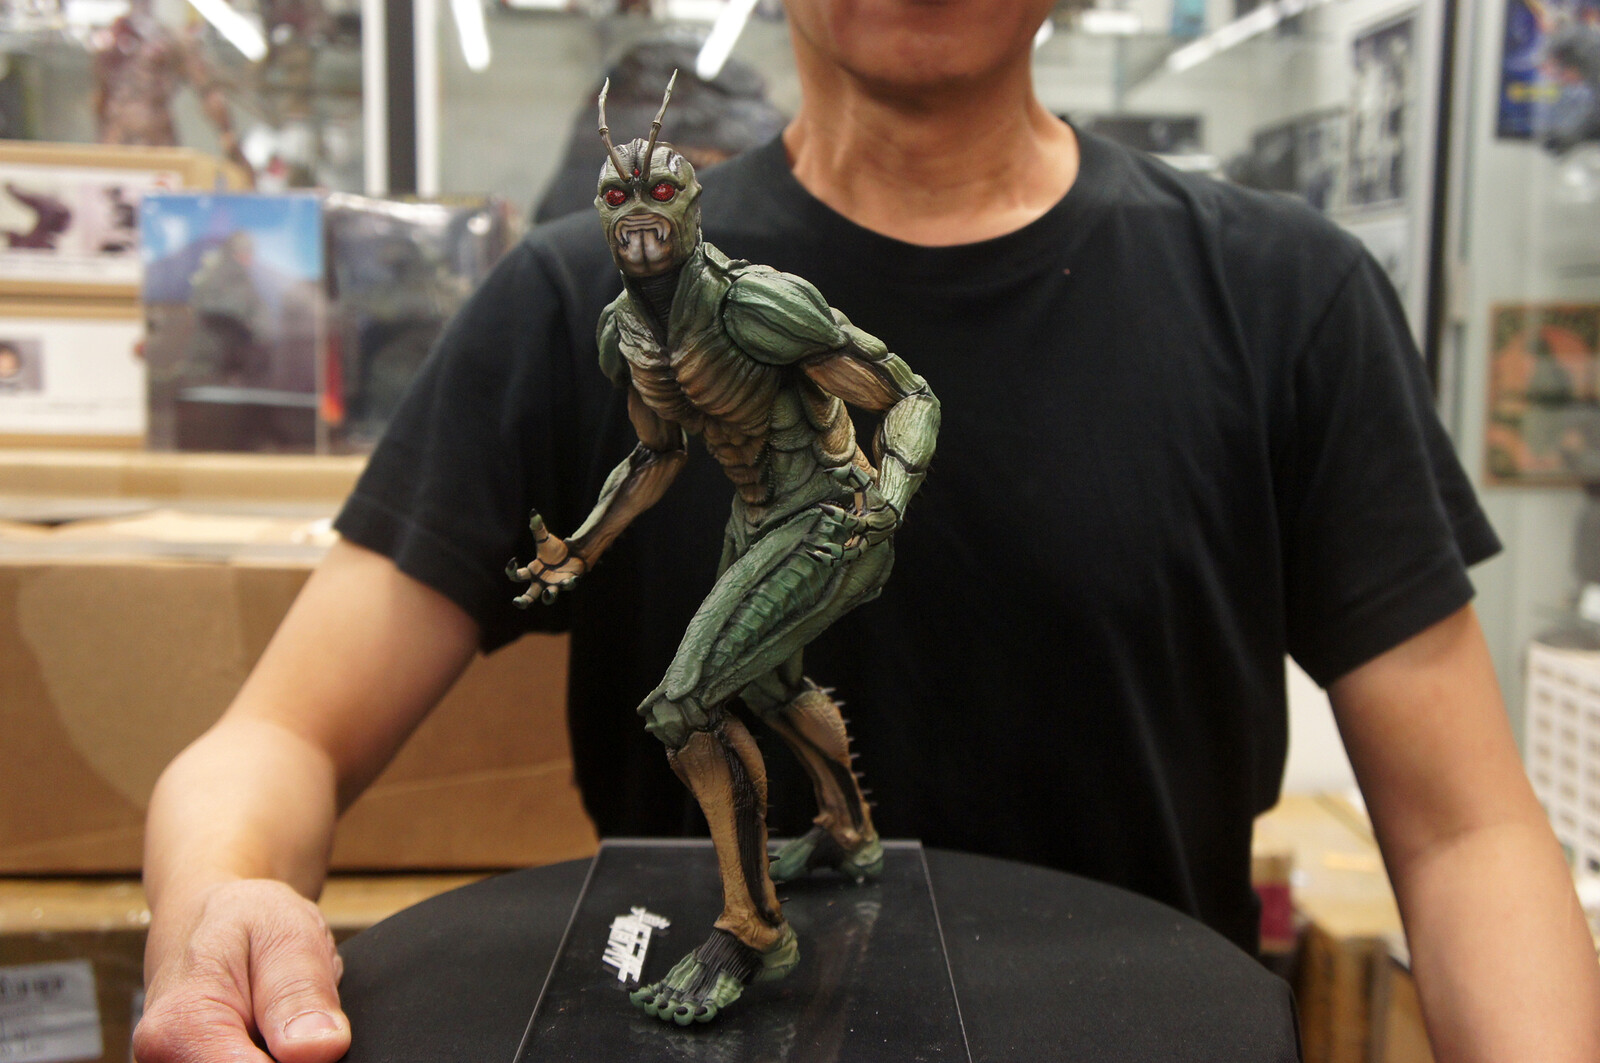 真・仮面ライダー 
Shin Kamen Rider 1:6 scale Art Statue 
https://www.solidart.club/